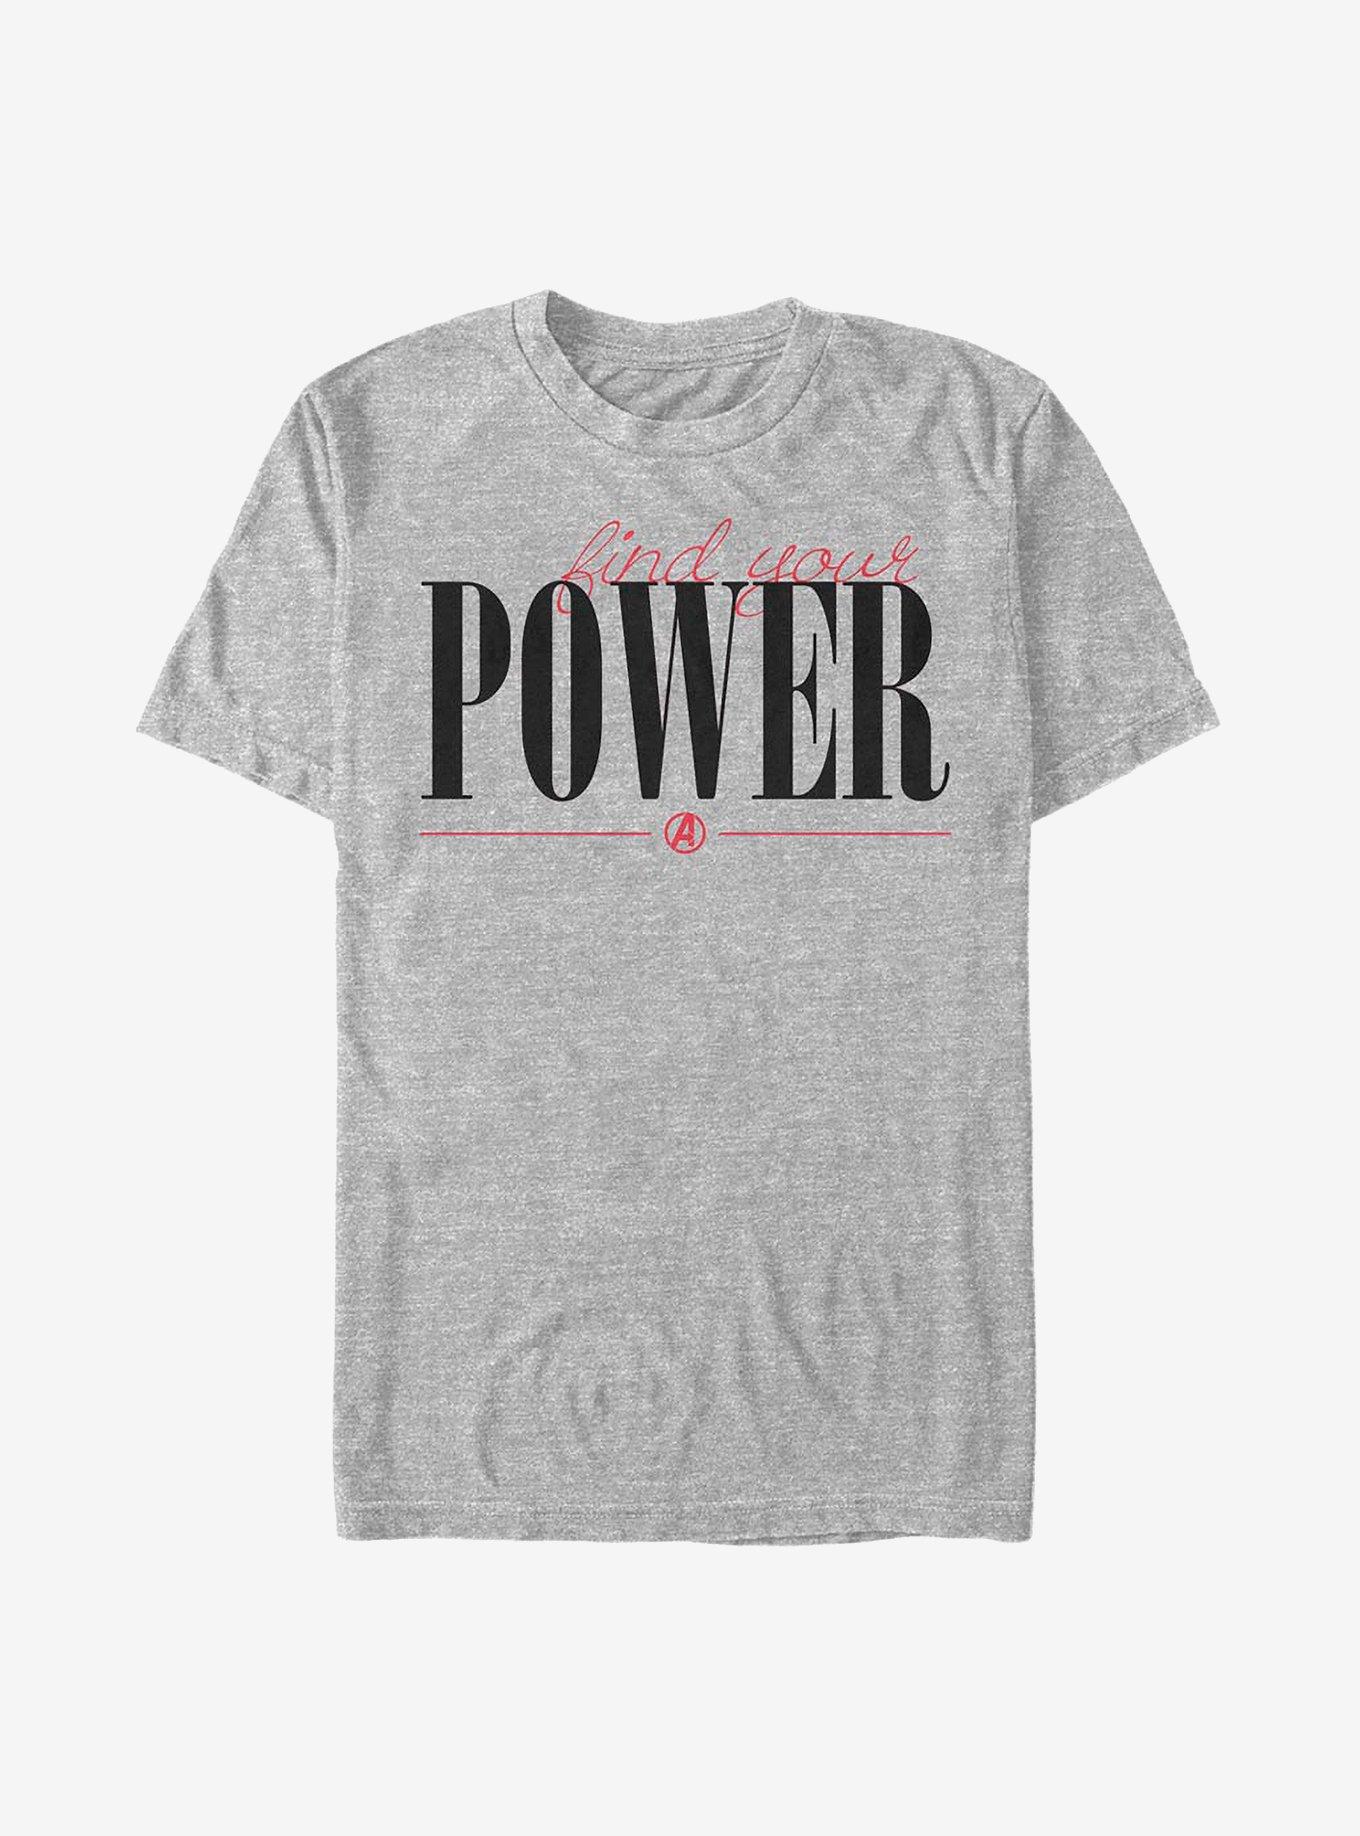 Marvel Avengers Power Script T-Shirt